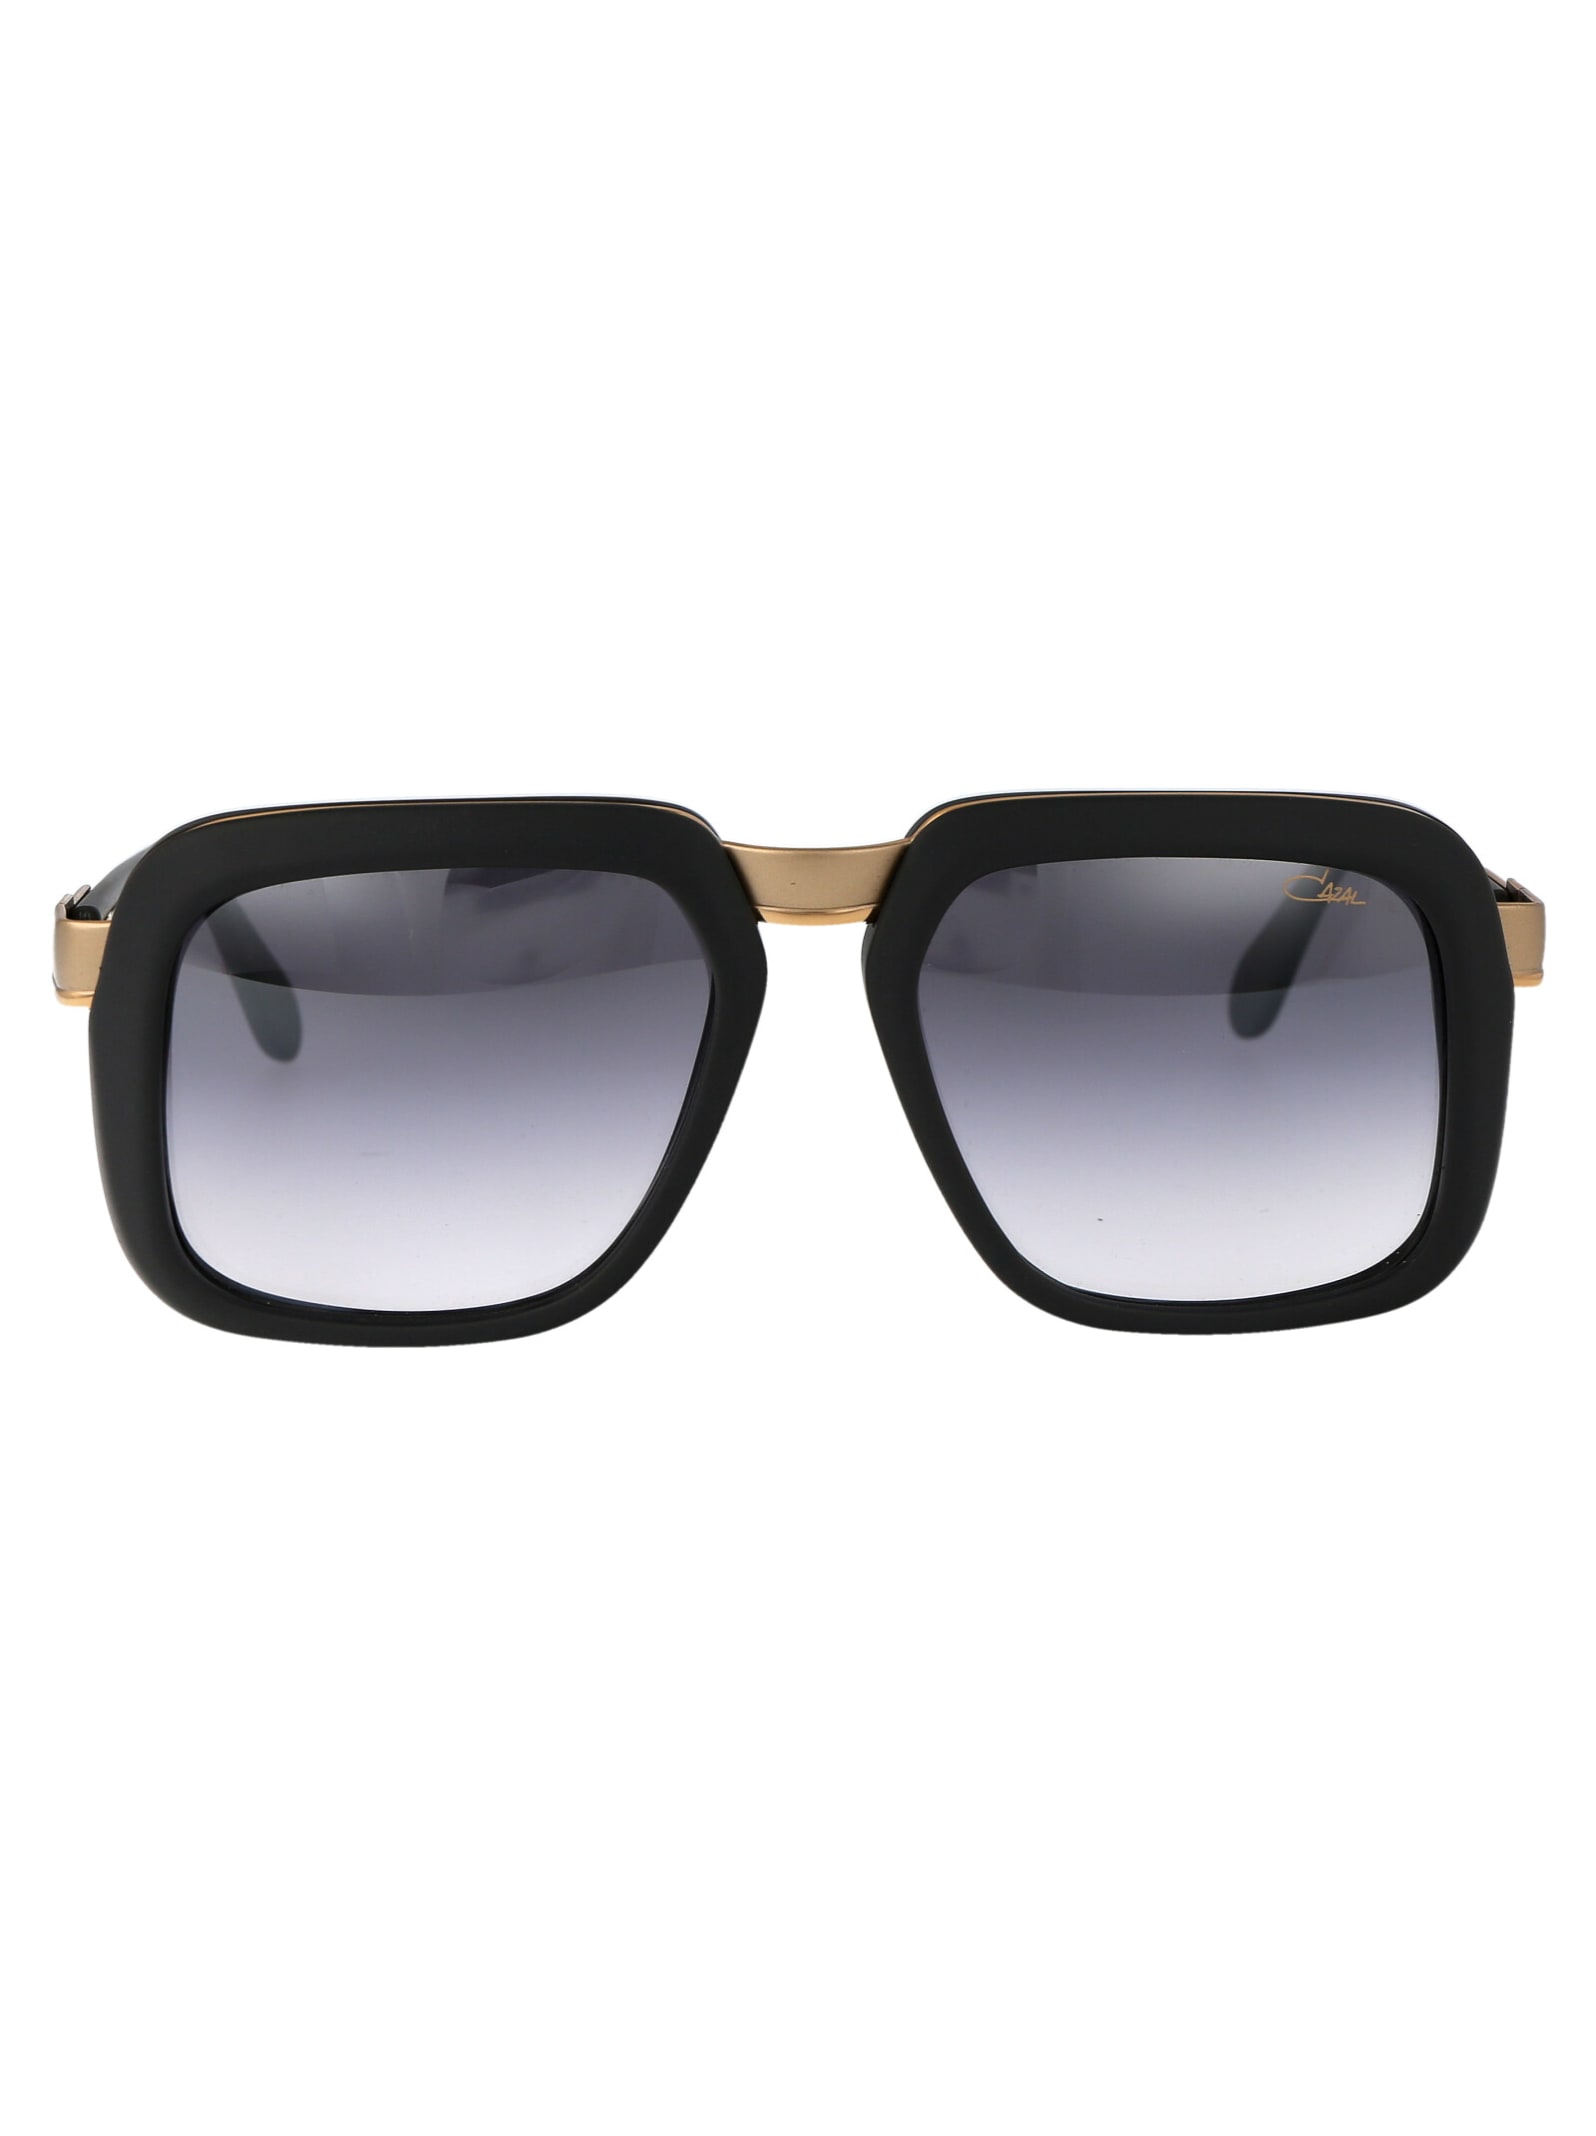 Mod. 616/3 Sunglasses